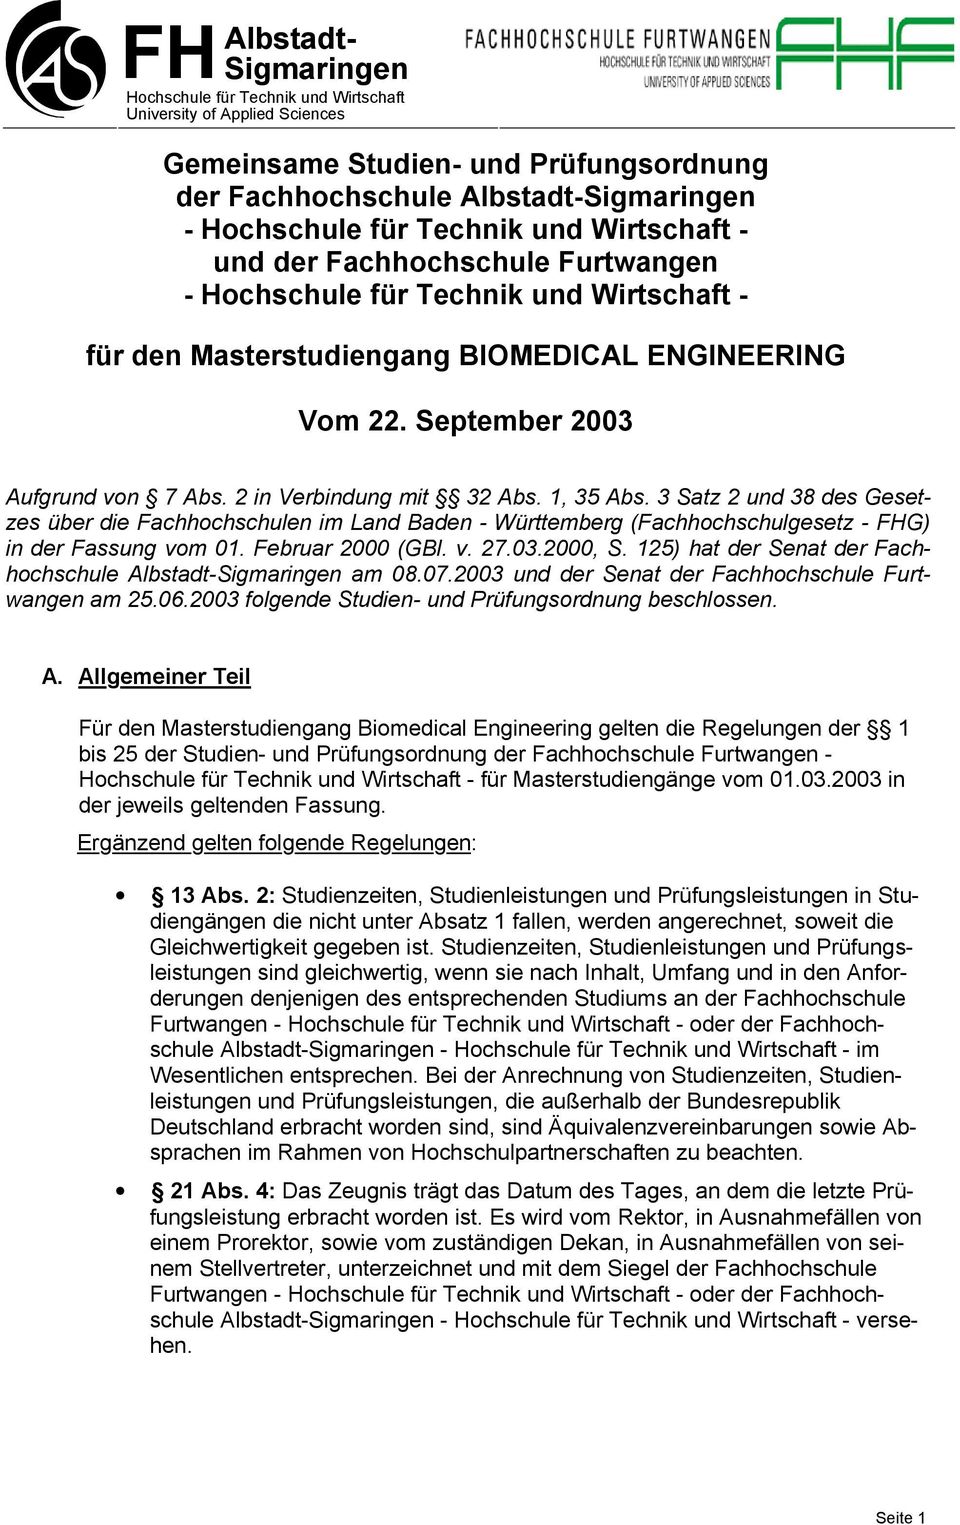 in Verbindung mit 3 Abs. 1, 35 Abs. 3 Satz und 38 des Gesetzes über die Fachhochschulen im Land Baden - Württemberg (Fachhochschulgesetz - FHG) in der Fassung vom 01. Februar 000 (GBl. v. 7.03.000, S.